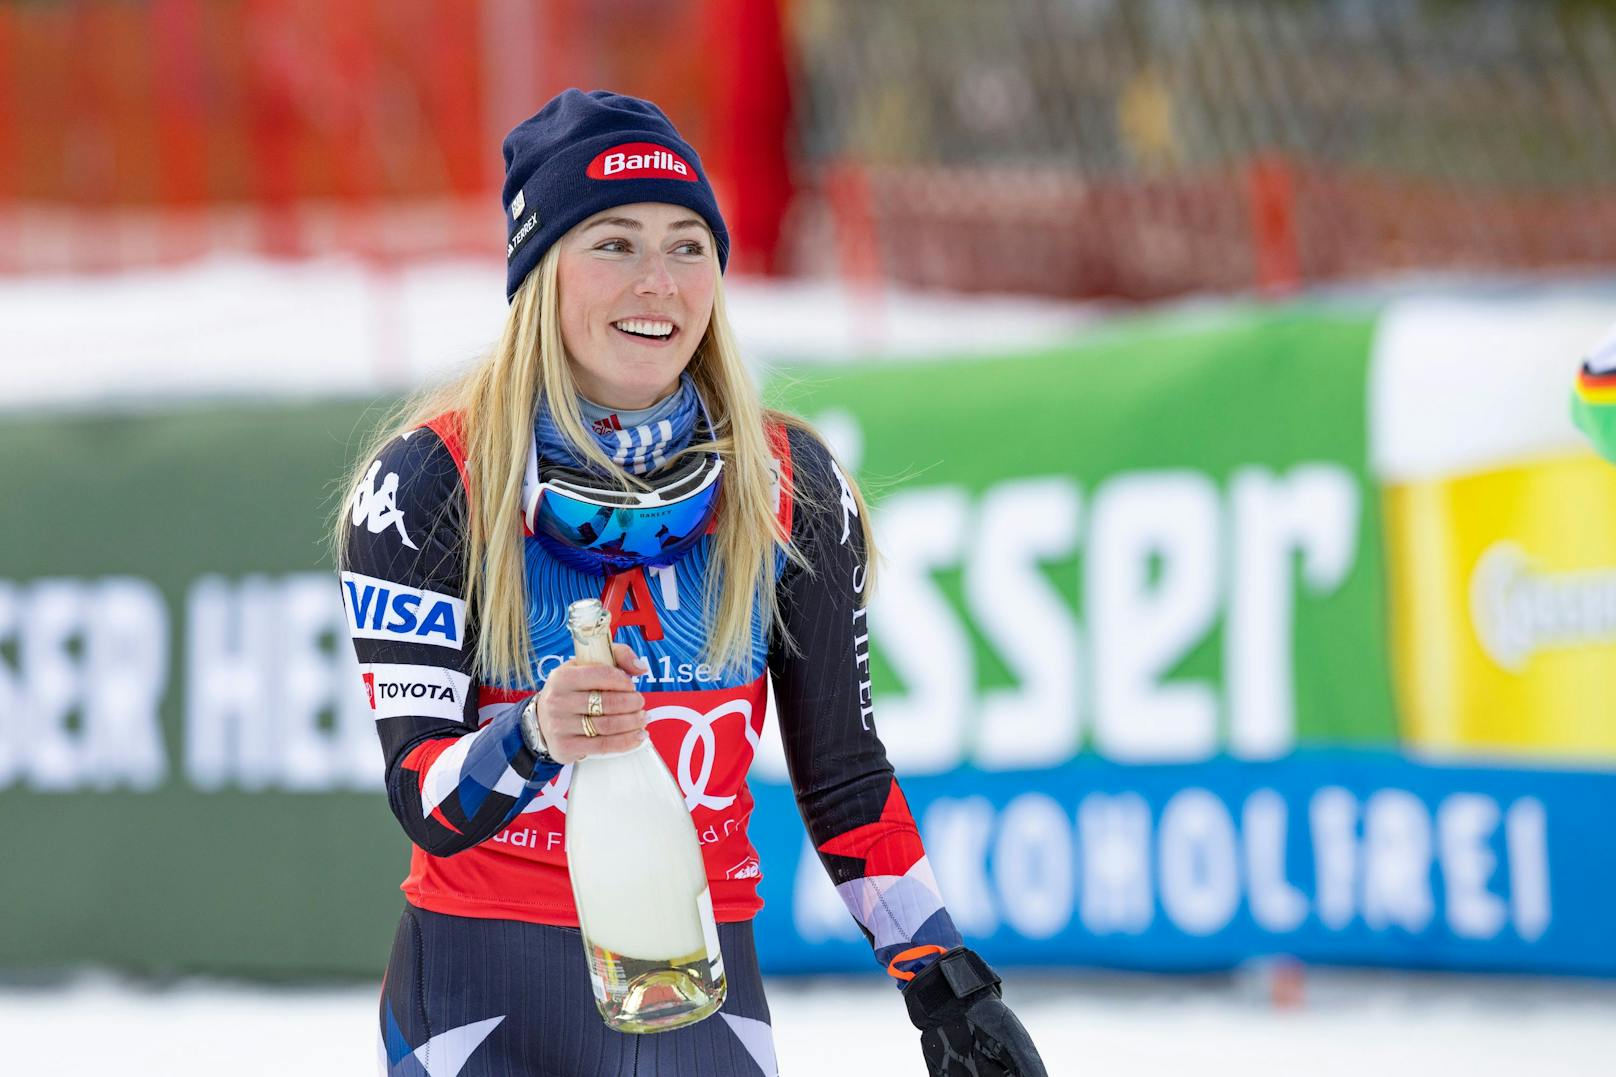 Auch im Slalom von Lienz war Mikaela Shiffrin nicht zu schlagen. Mit einem Vorsprung von über zwei Sekunden ließ sie die Konkurrenz hinter sich, holte ihren 93. Weltcupsieg. Die ÖSV-Damen fuhren mit fünf Läuferinnen unter den Top 13 ein gutes Mannschaftsergebnis ein.